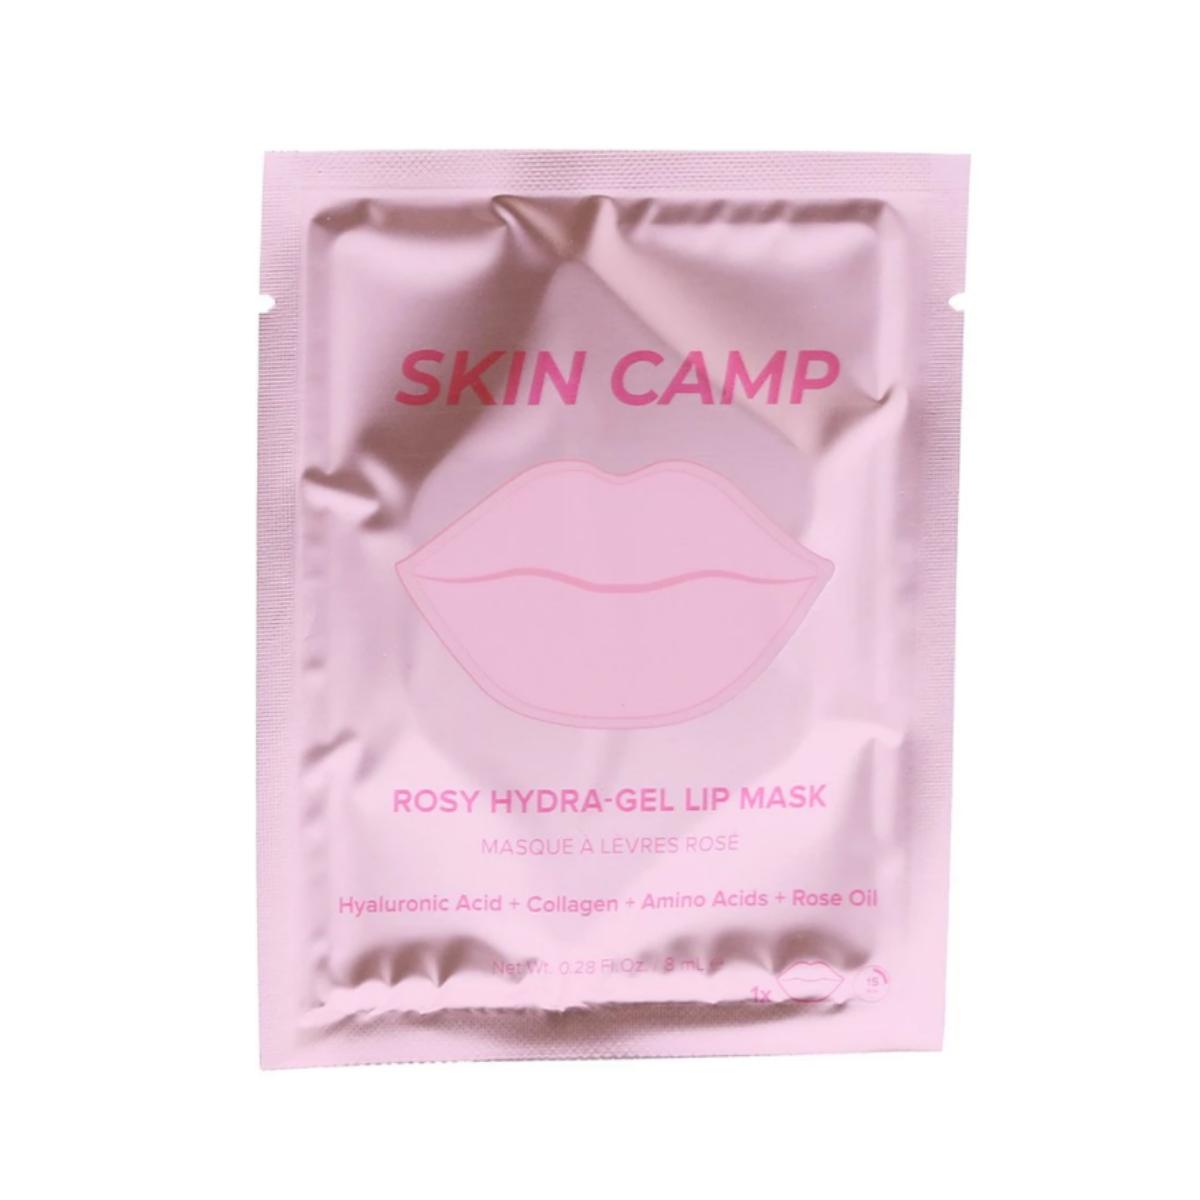 Skin Gym - Skin Camp Rosy Hydra-Gel Lip Mask